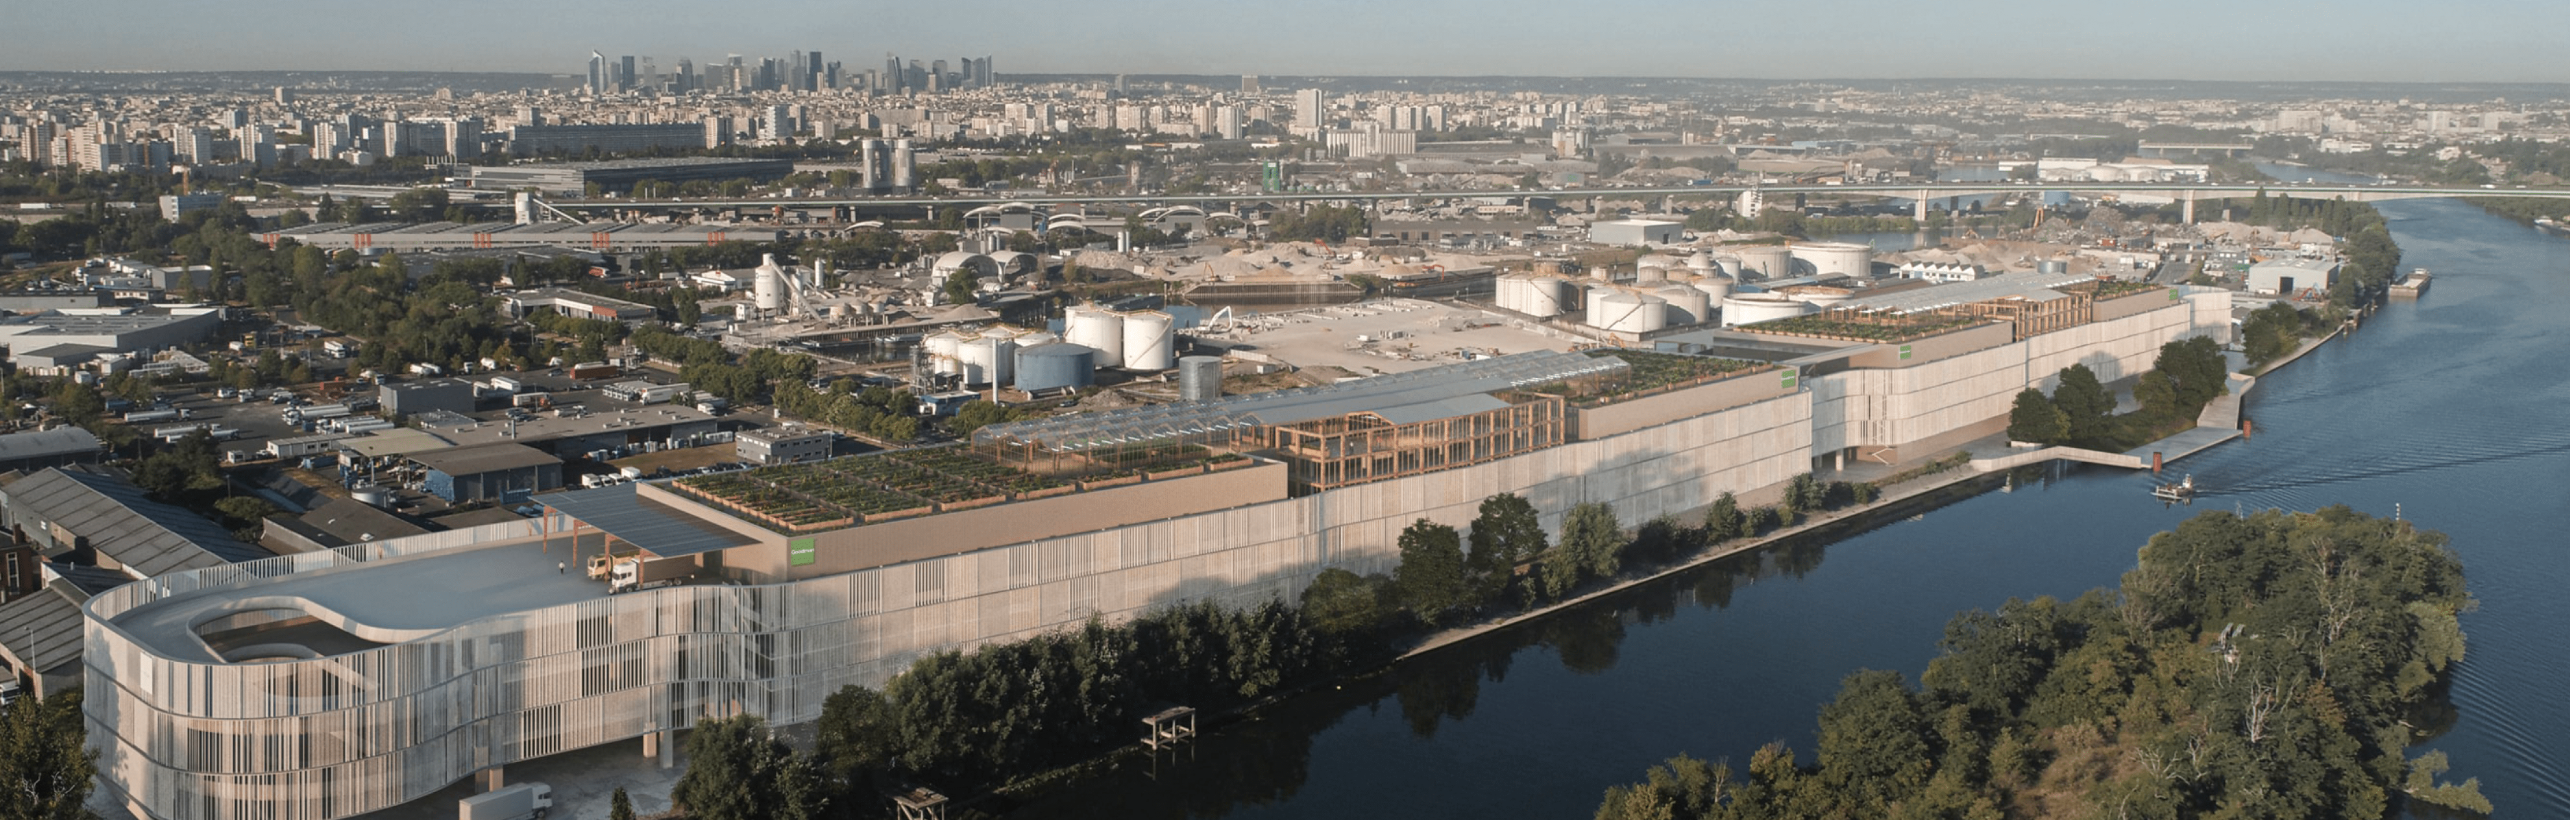 goodman-desarrollará-green-dock-complejo-portuario-fluvial-en-parís-alt